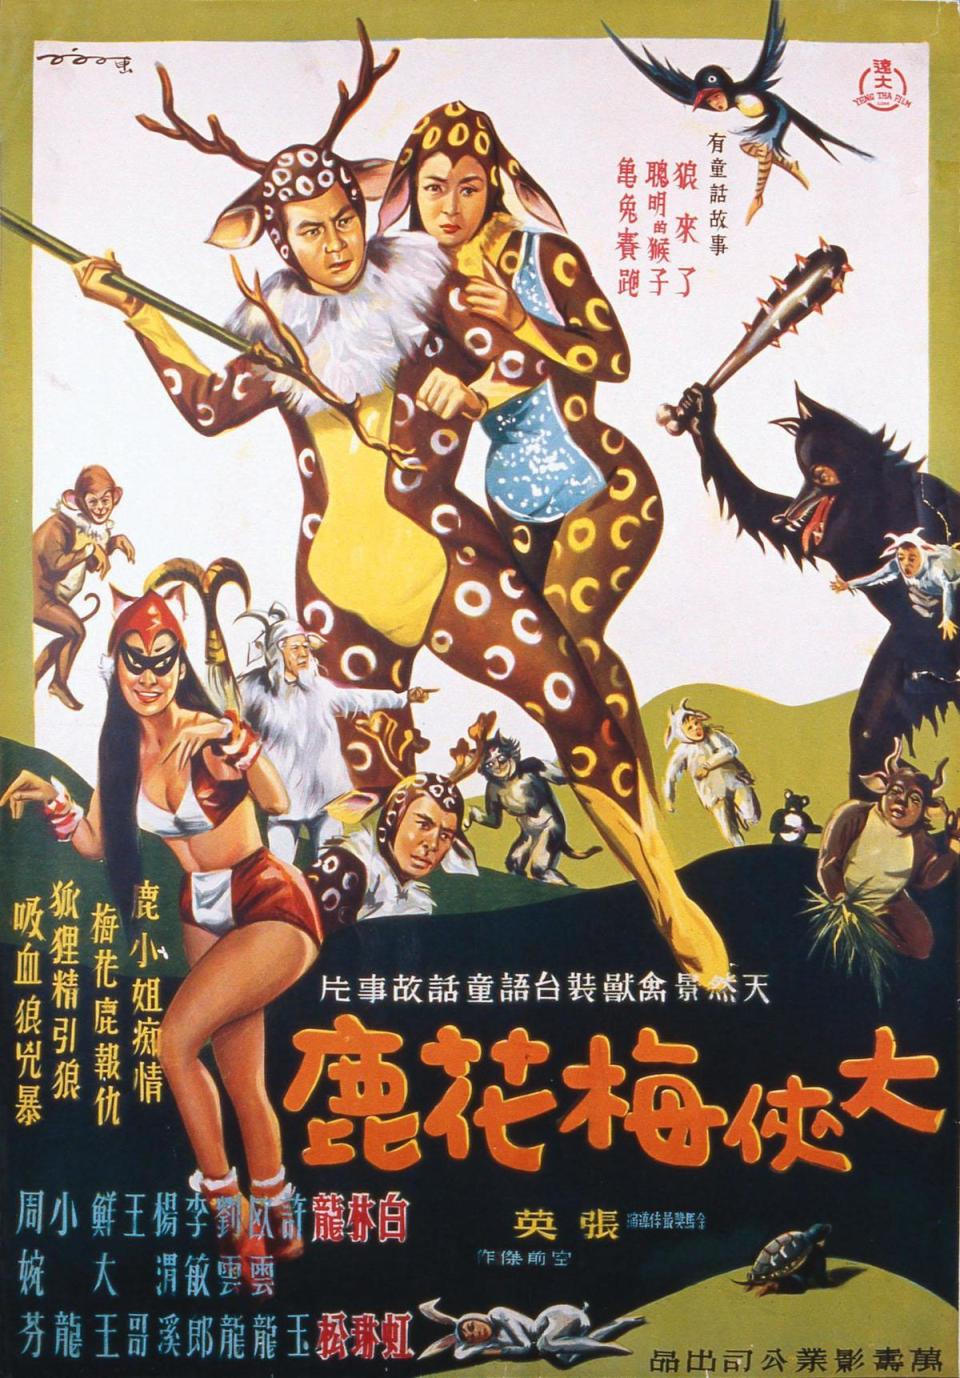 《大俠梅花鹿》的電影海報由傳奇繪師陳子福手繪。簡嘉誠創作《畫電影的人》前研讀許多關於陳子福的資料，希望能還原繪師的工作過程。（影視聽中心提供）